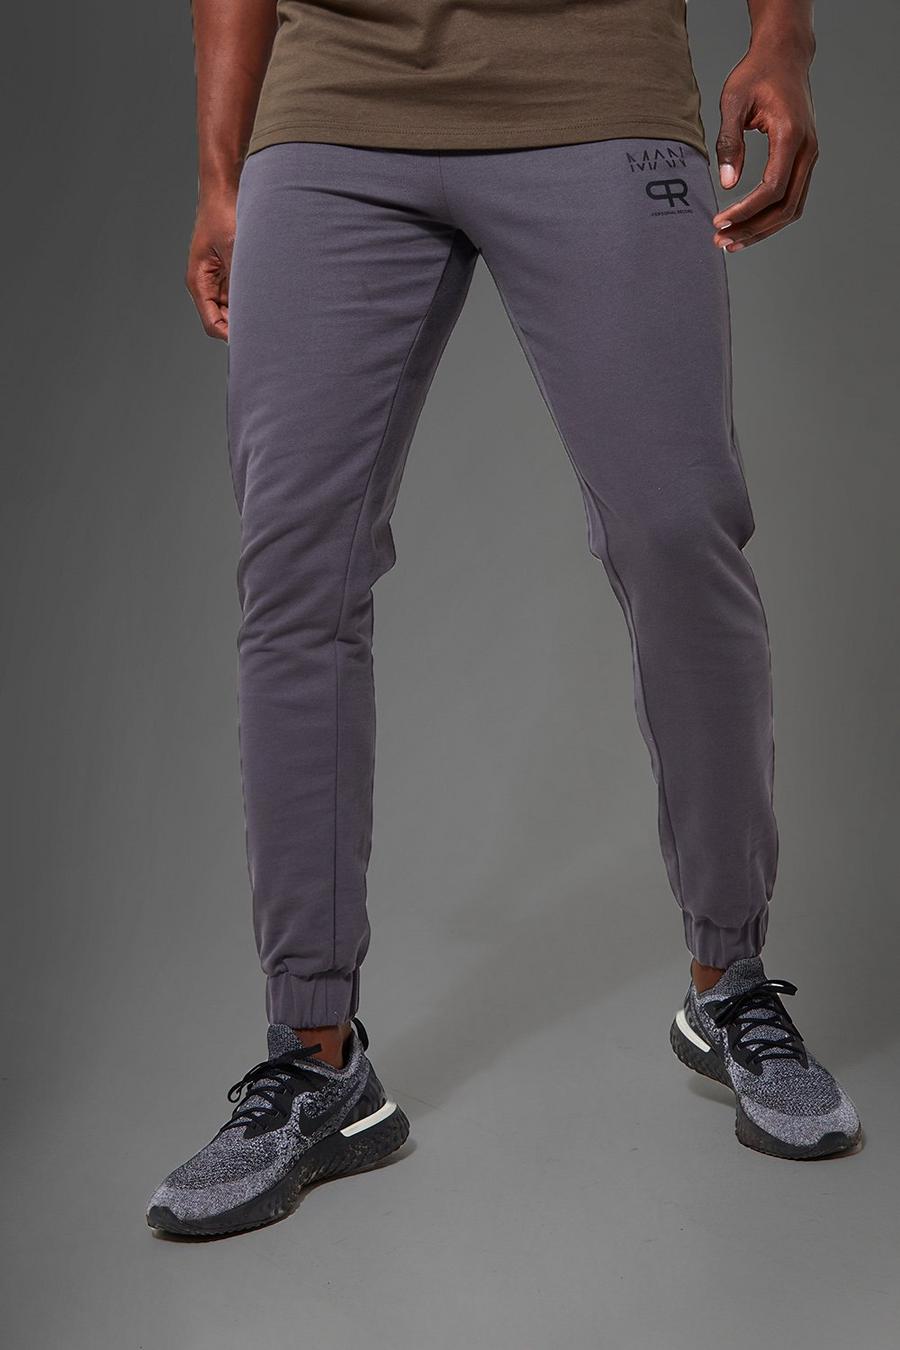 Pantaloni tuta Man Active Gym con stampa riflettente, Charcoal grigio